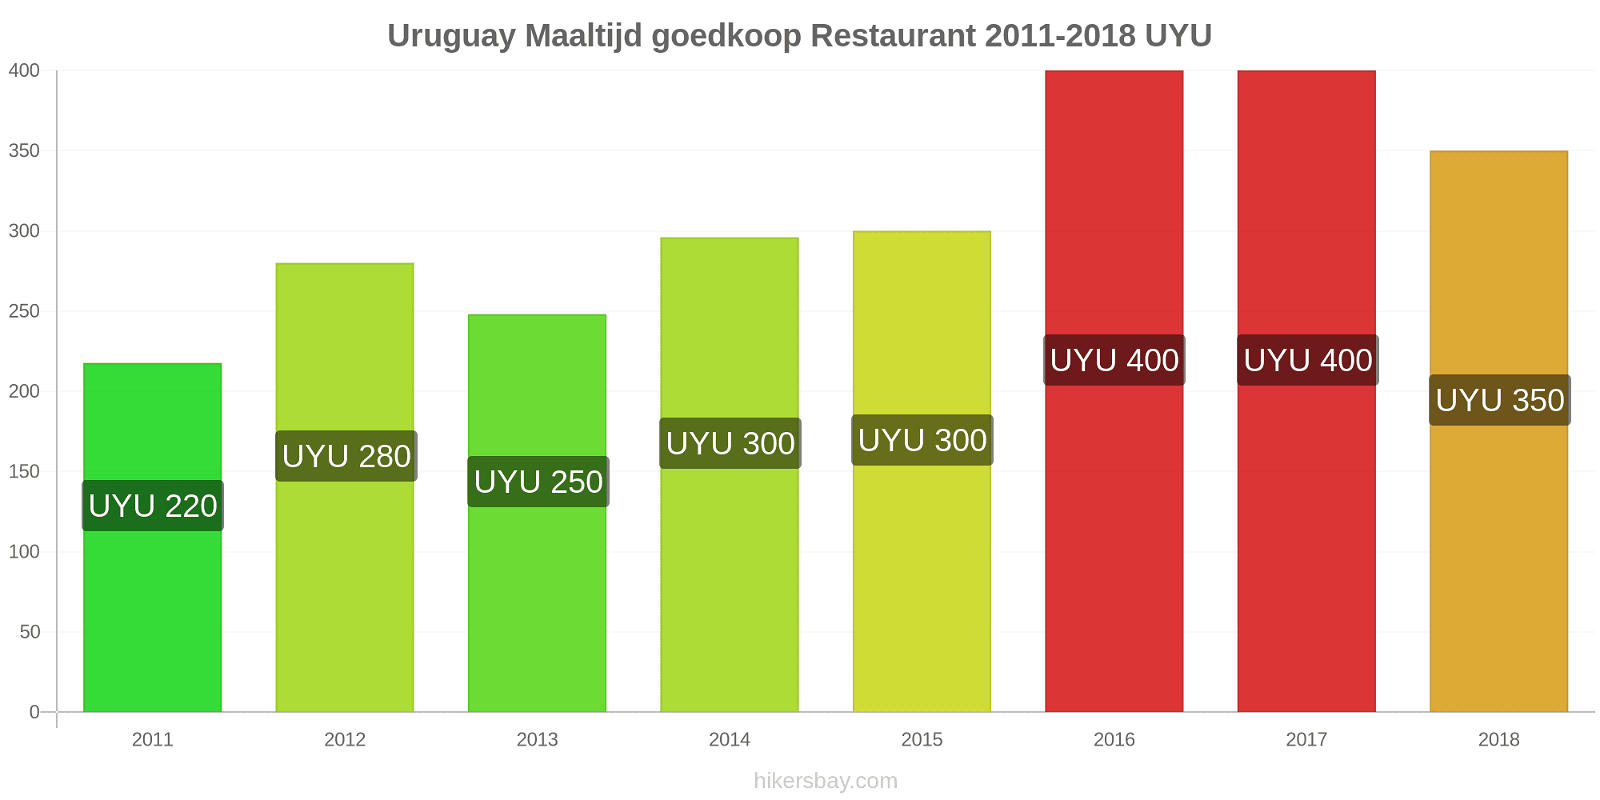 Uruguay prijswijzigingen Maaltijd in een goedkoop restaurant hikersbay.com